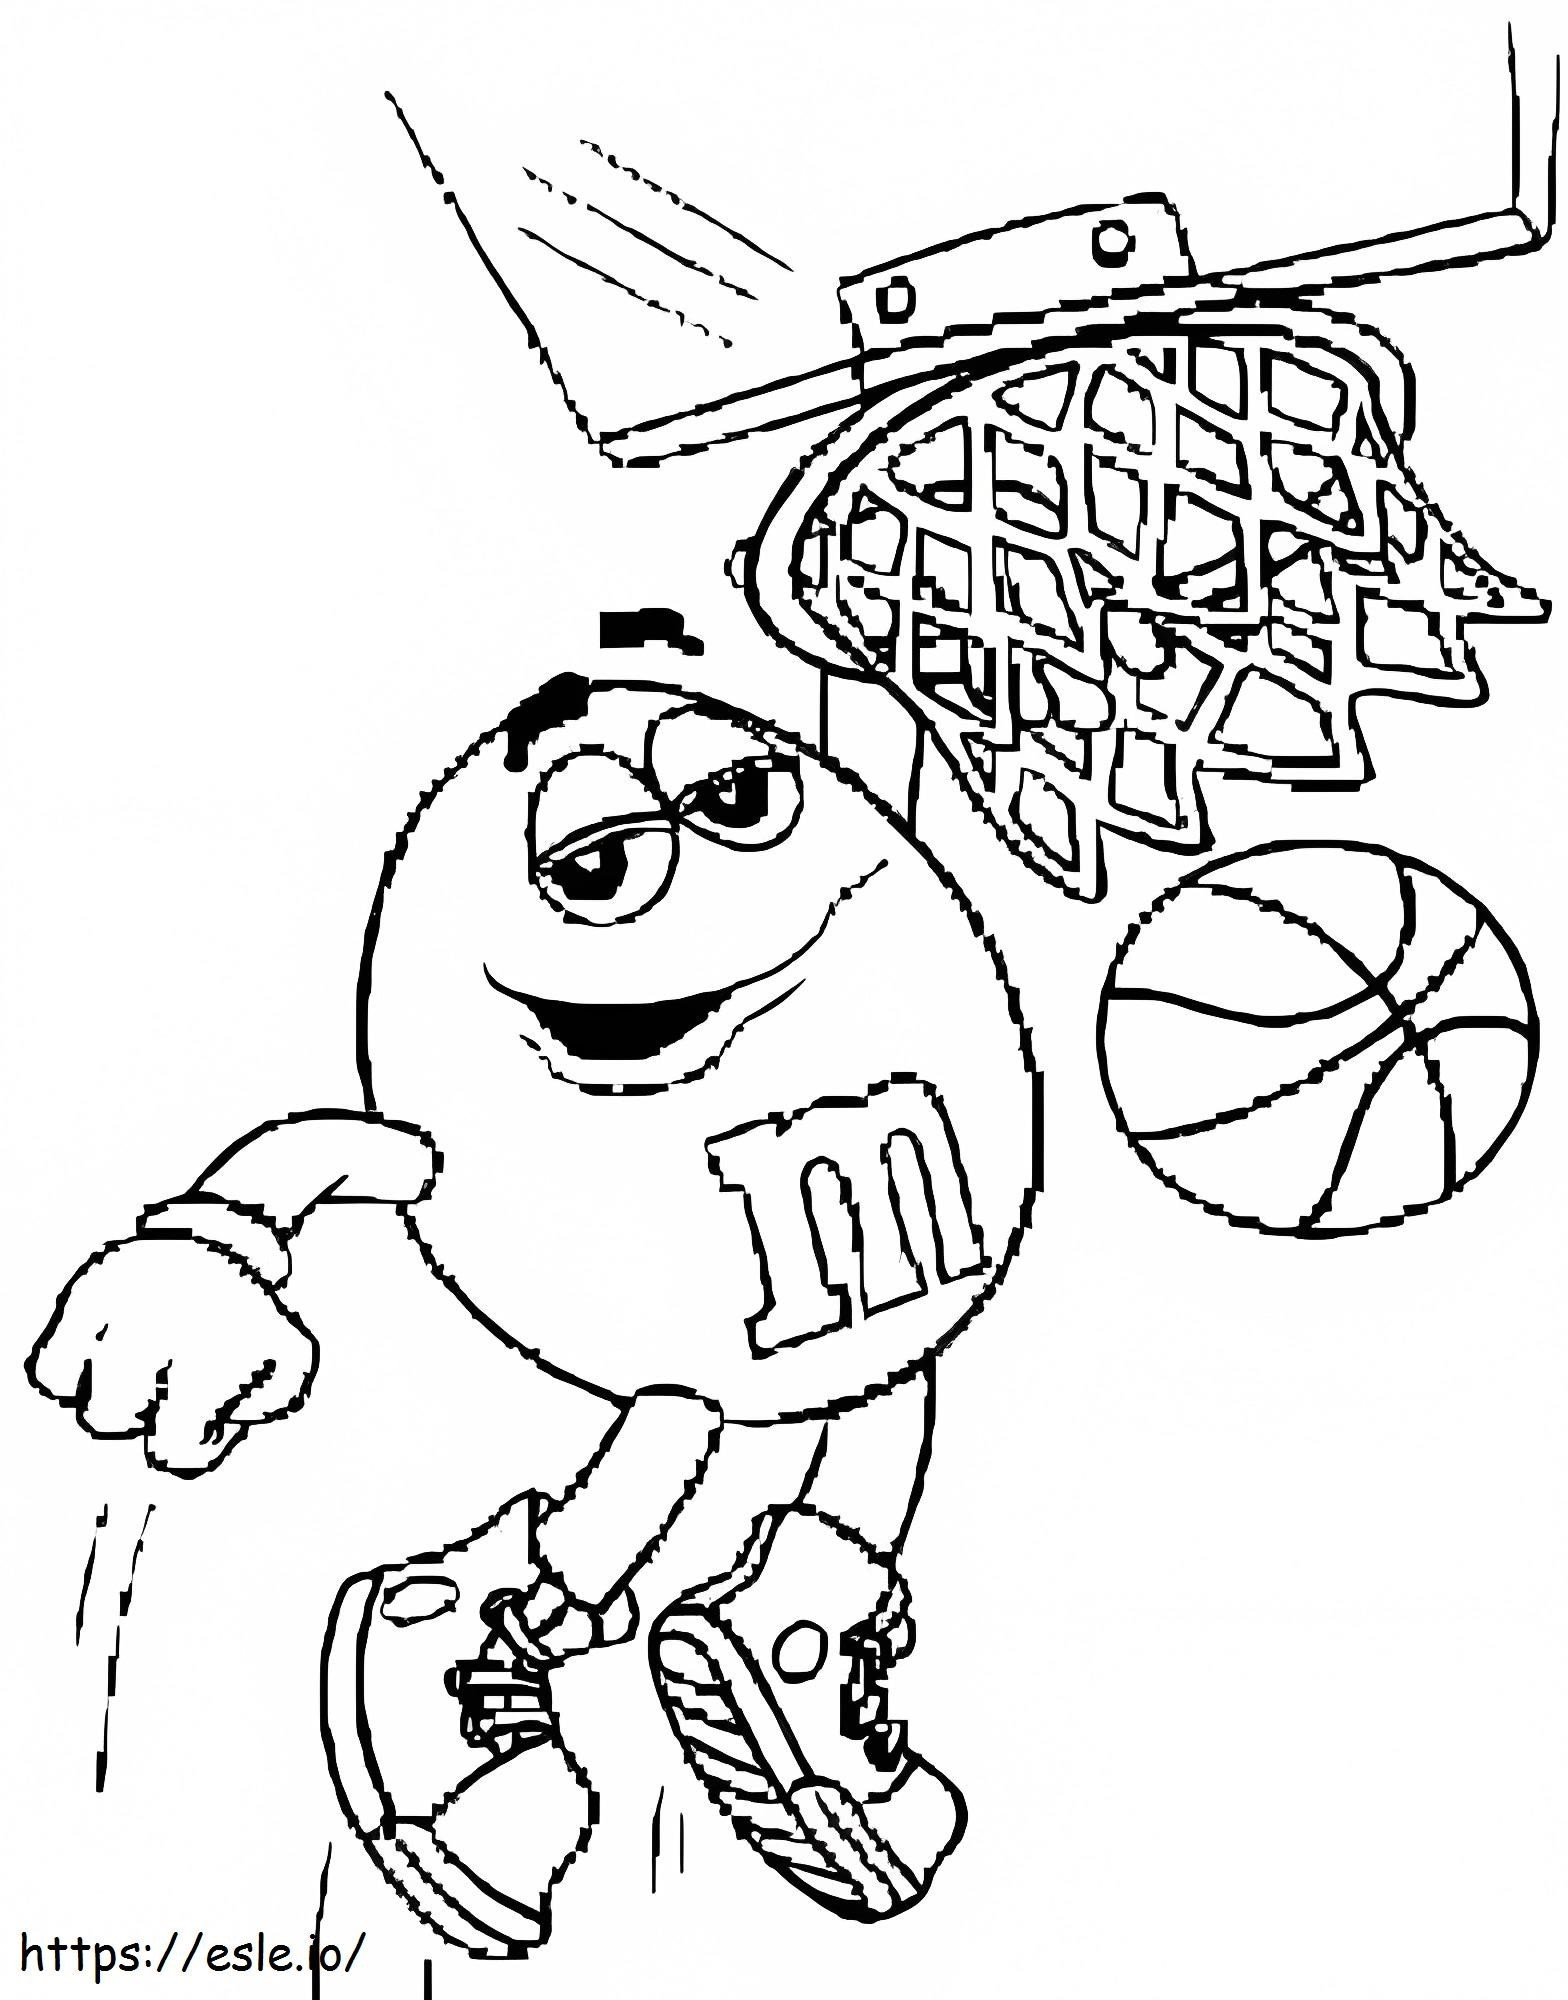 Coloriage Mm, jouer au basket à imprimer dessin